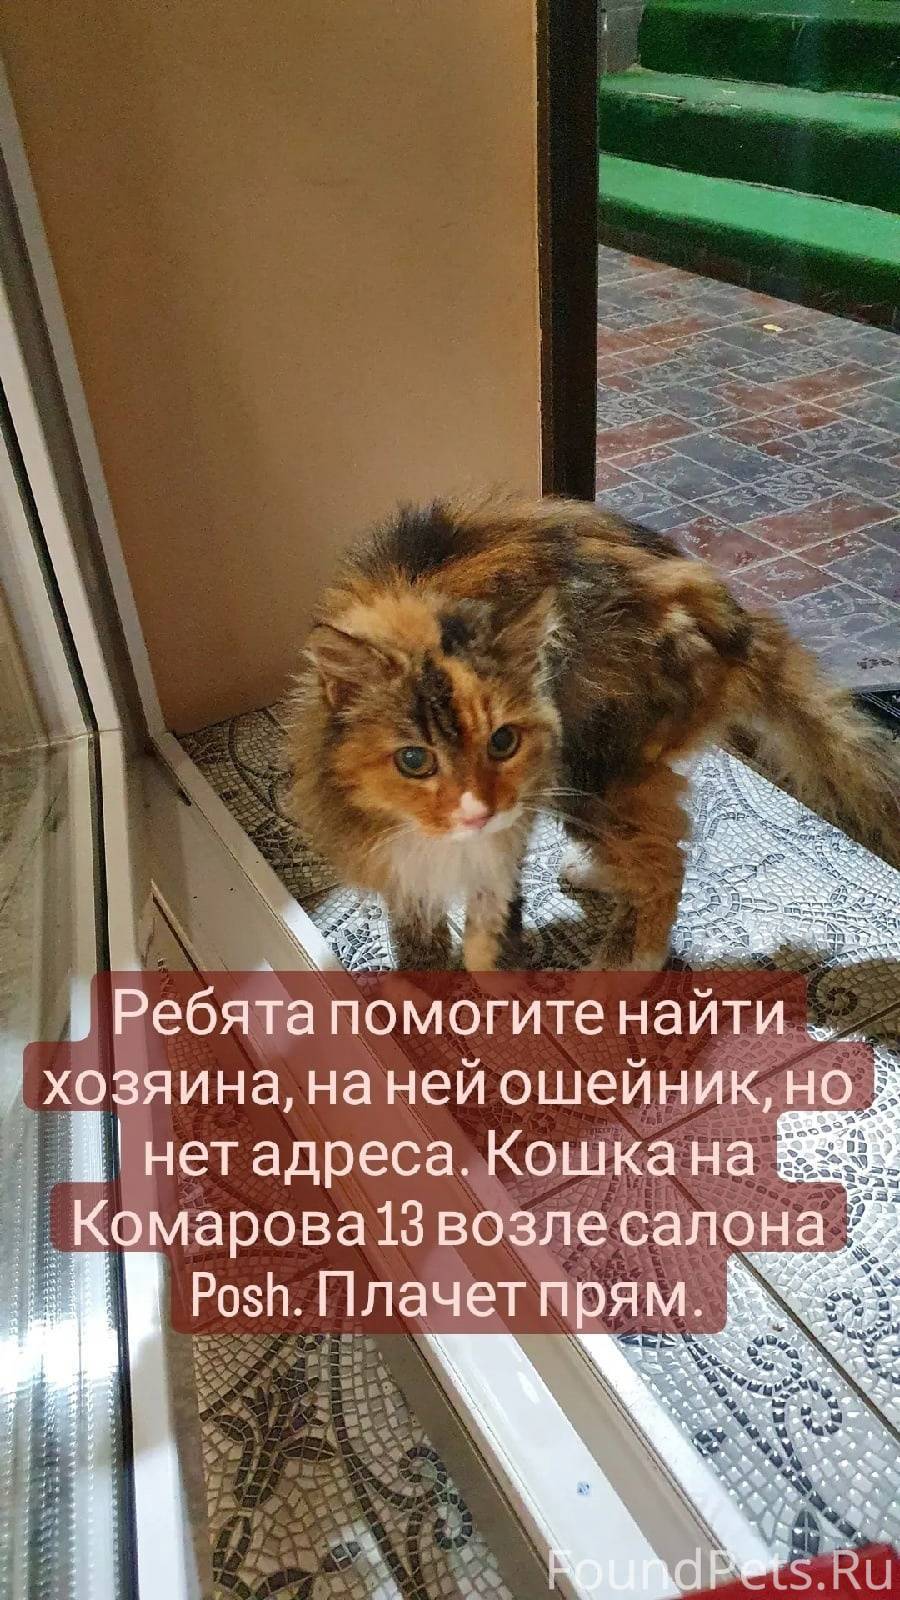 Найден кот [id25925504|Оксана ...